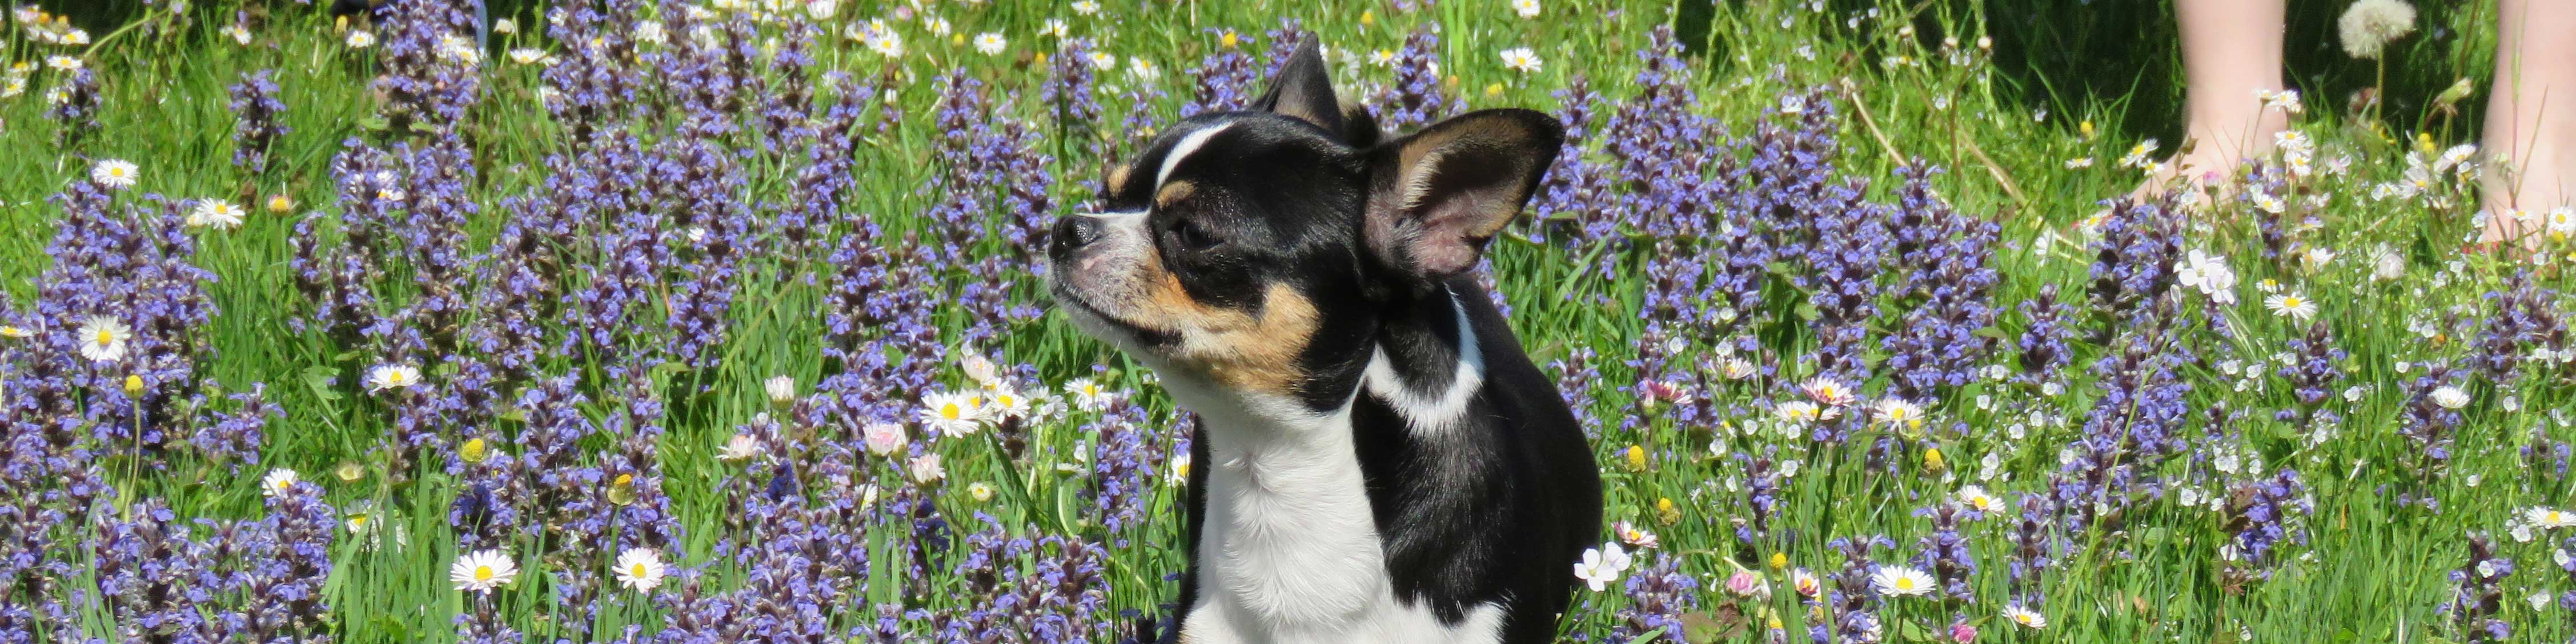 Chihuahua auf einer Blumenwiese